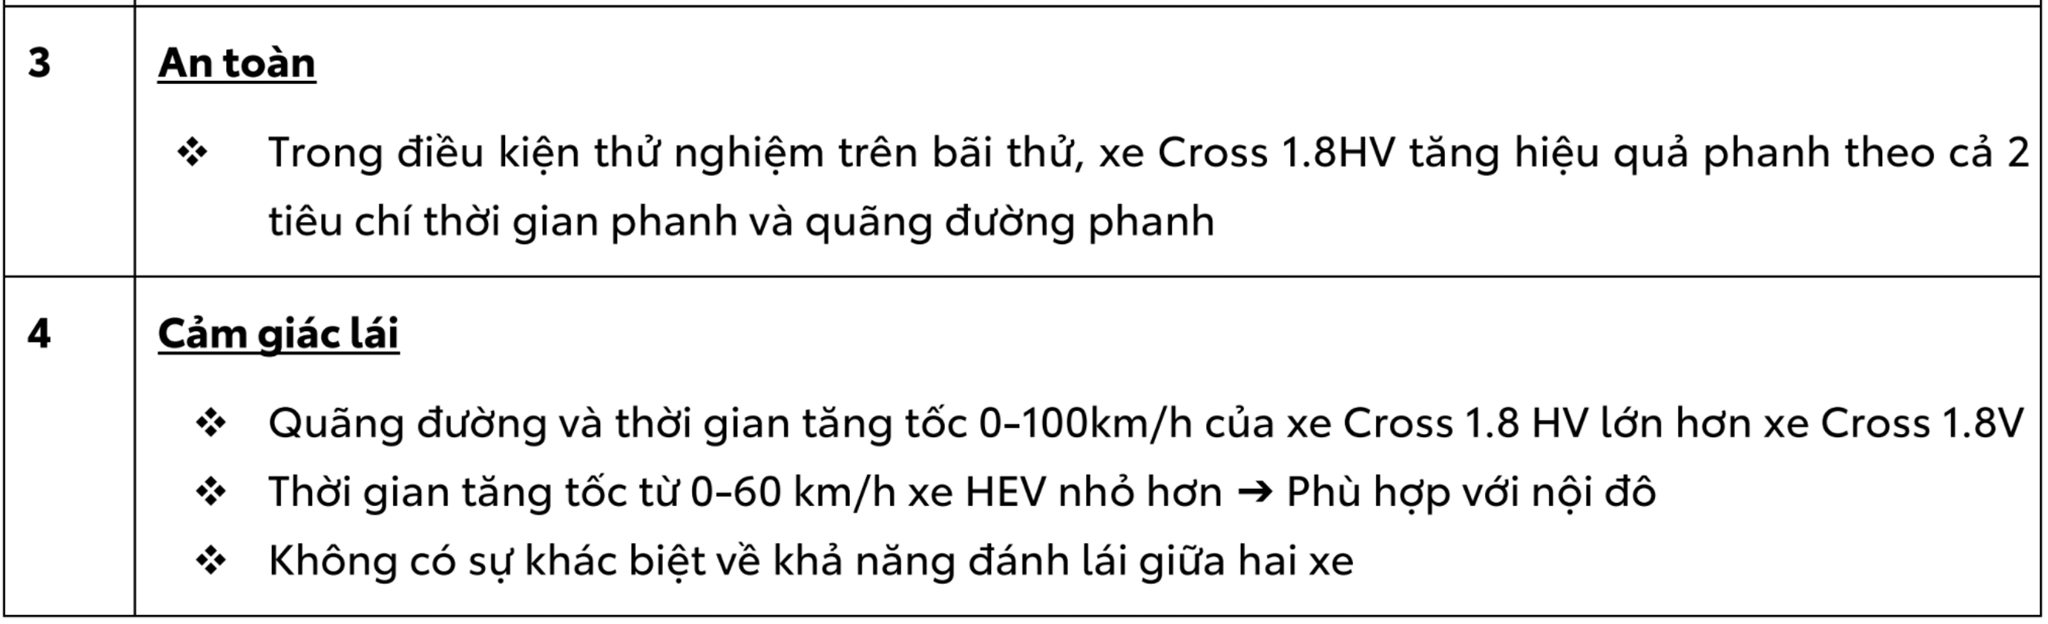 Ưu điểm của xe Hybrid so với xe xăng tại Việt Nam screenshot-57.png